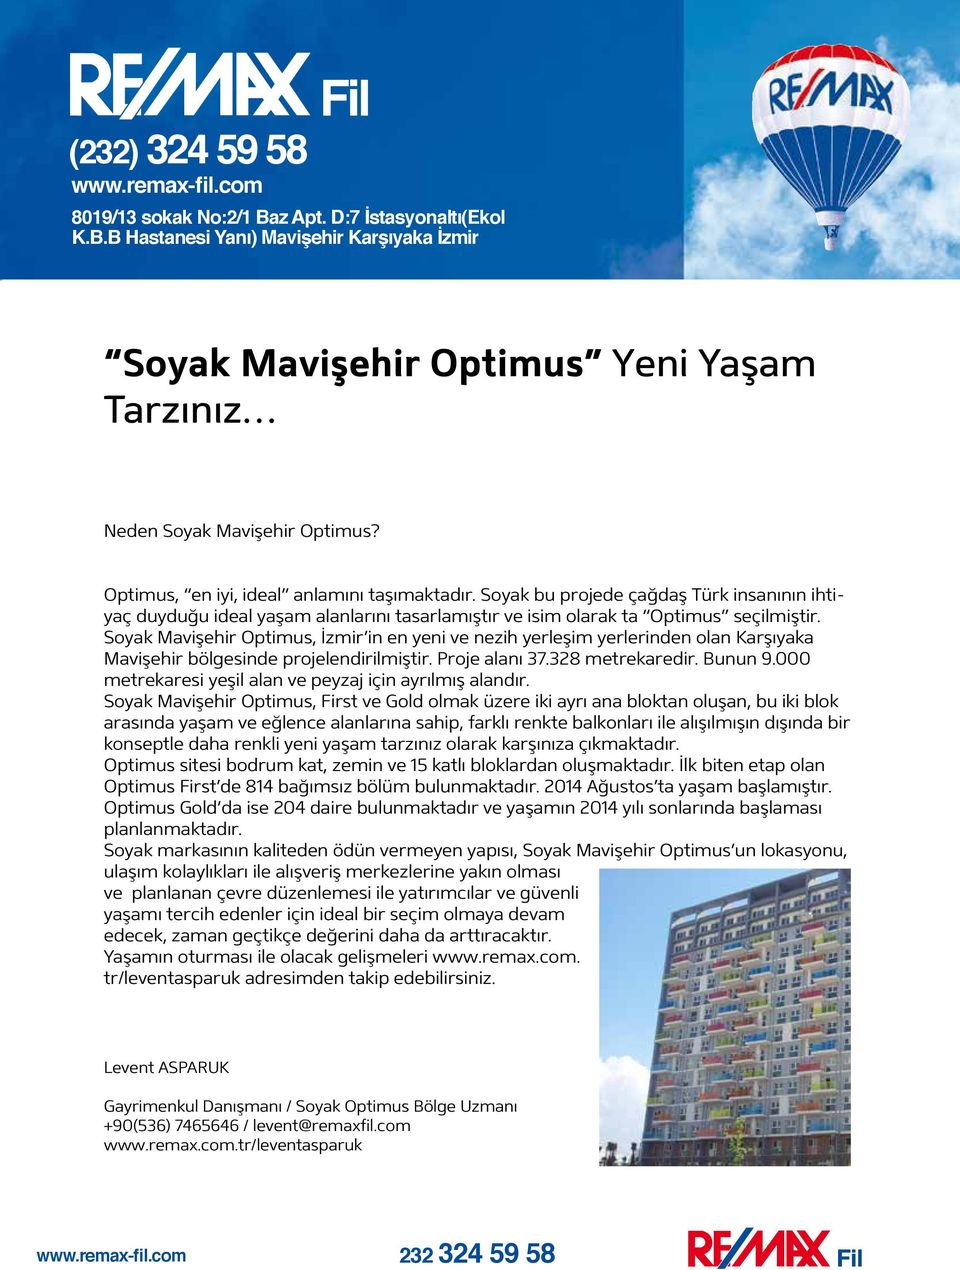 Soyak Optimus, İzmir in en yeni ve nezih yerleşim yerlerinden olan bölgesinde projelendirilmiştir. Proje alanı 37.328 metrekaredir. Bunun 9.000 metrekaresi yeşil alan ve peyzaj için ayrılmış alandır.